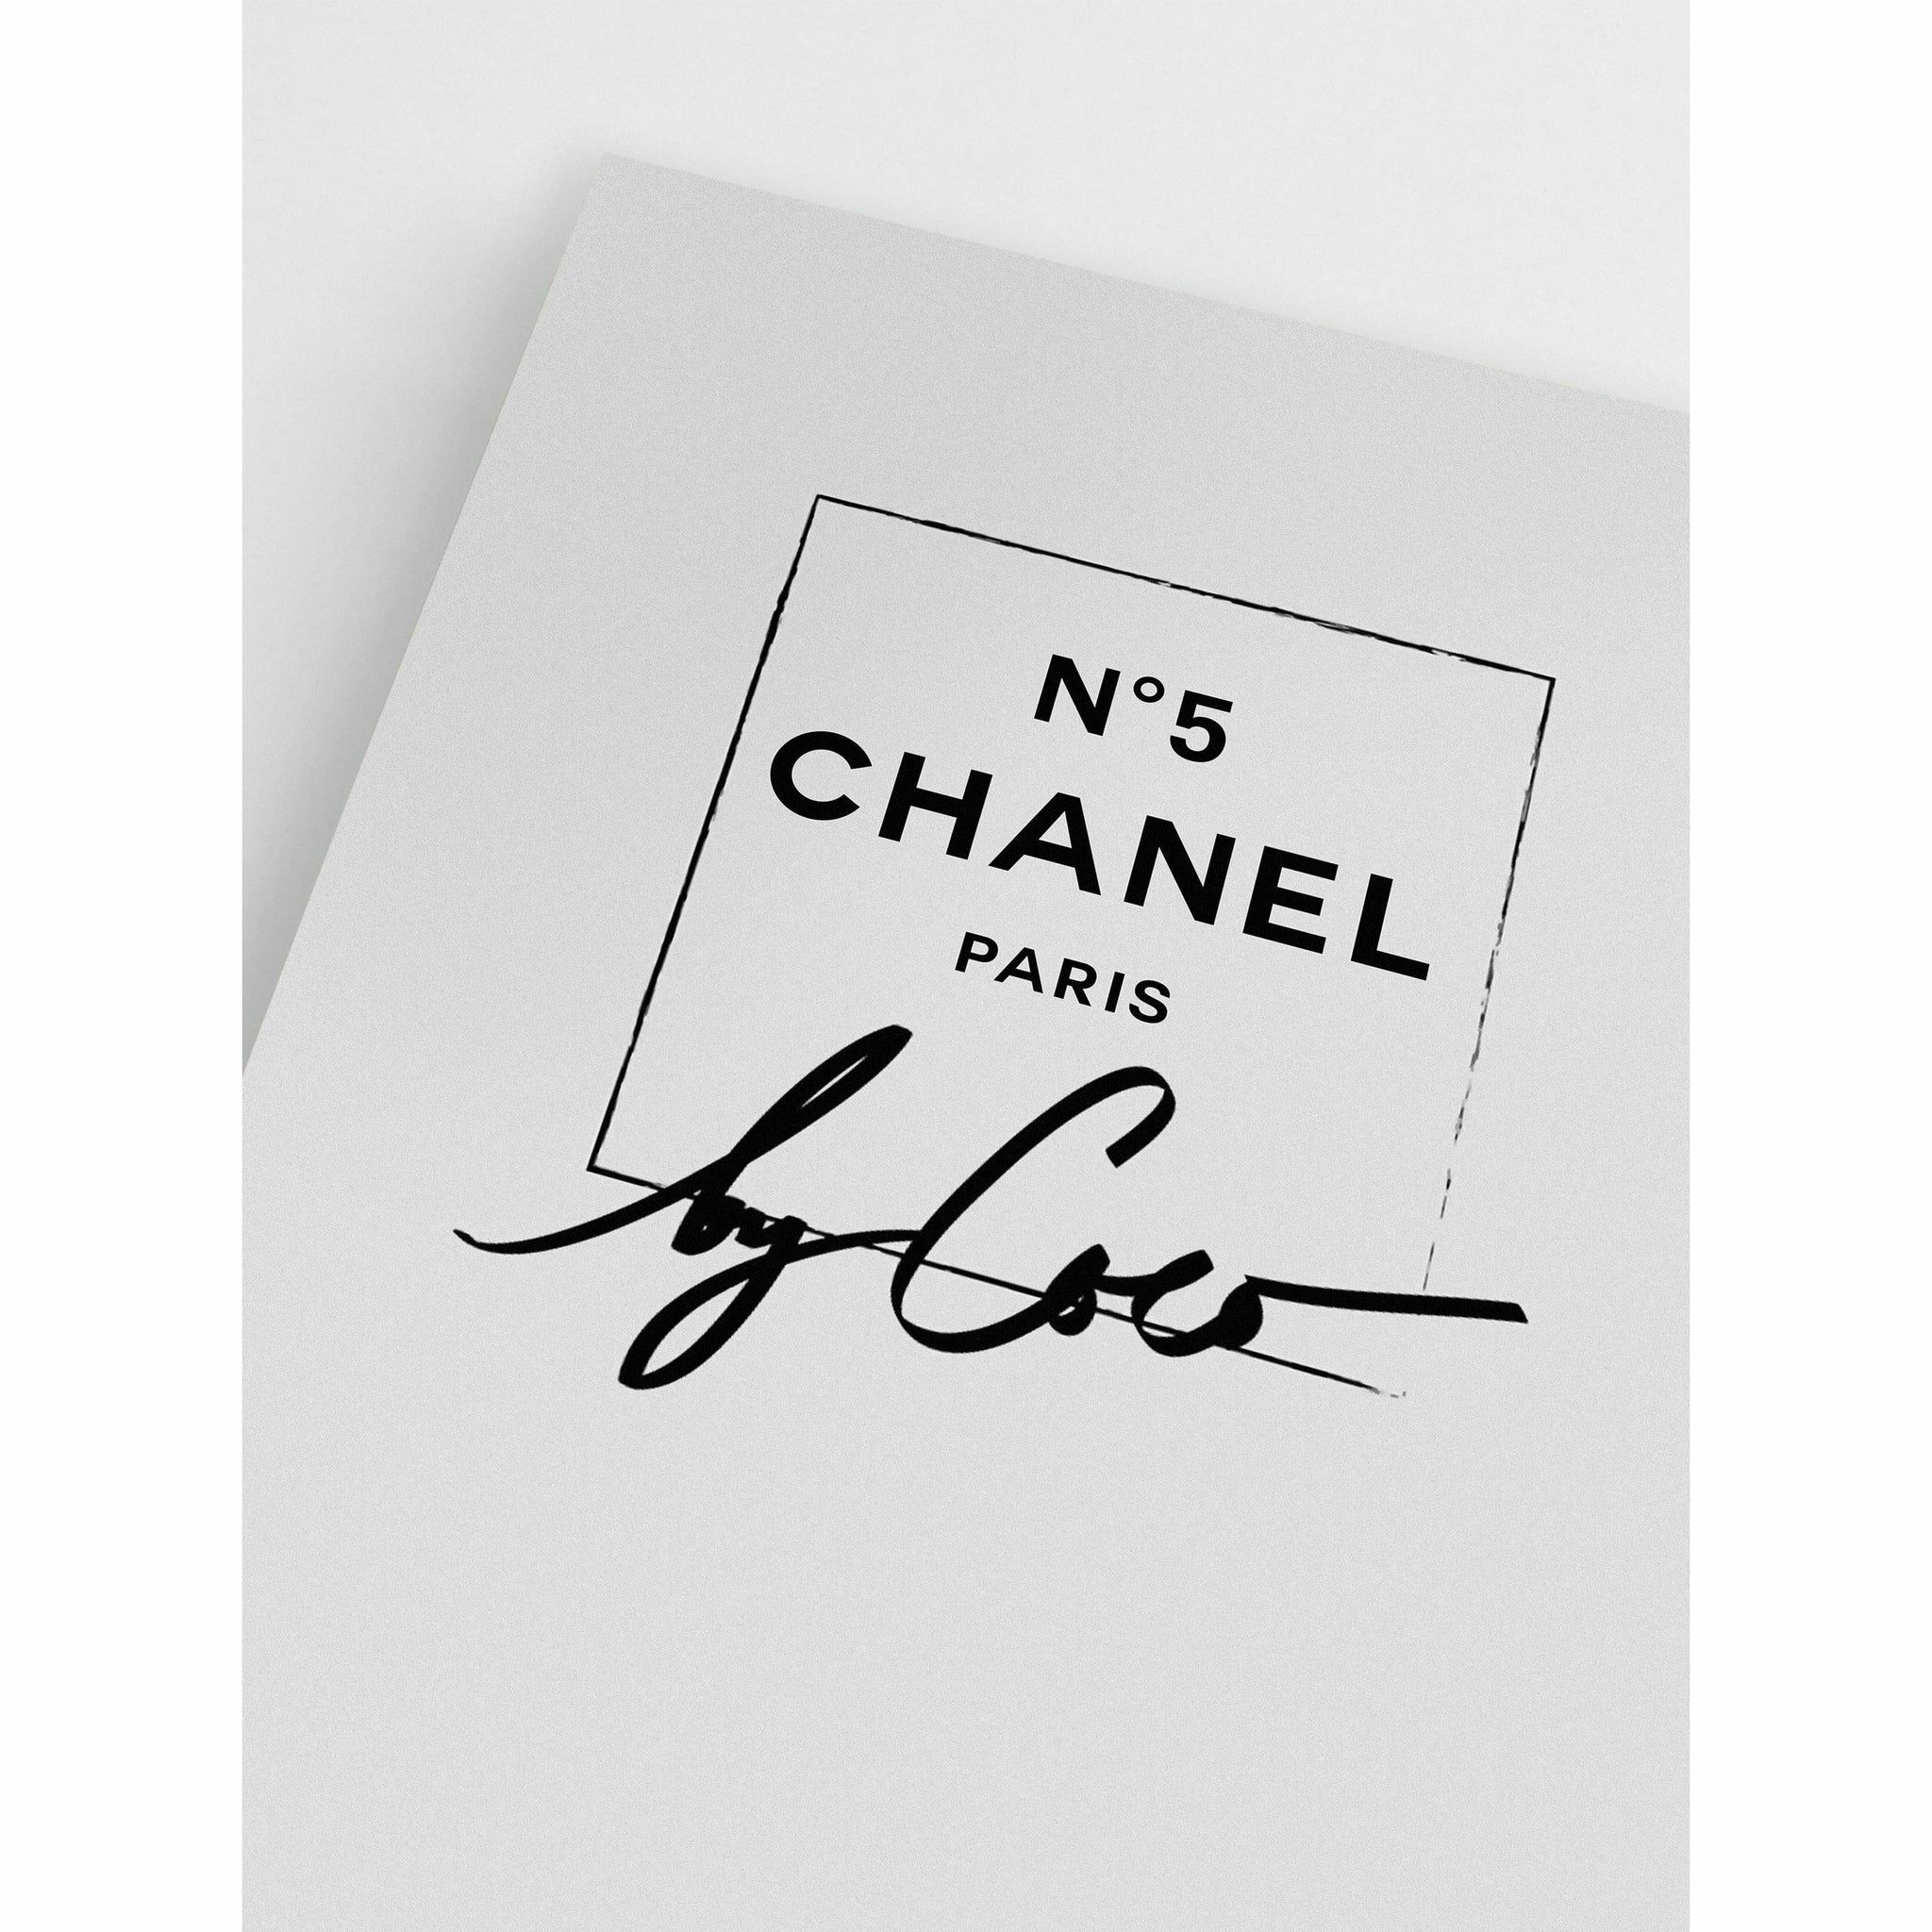 Chanel paris 